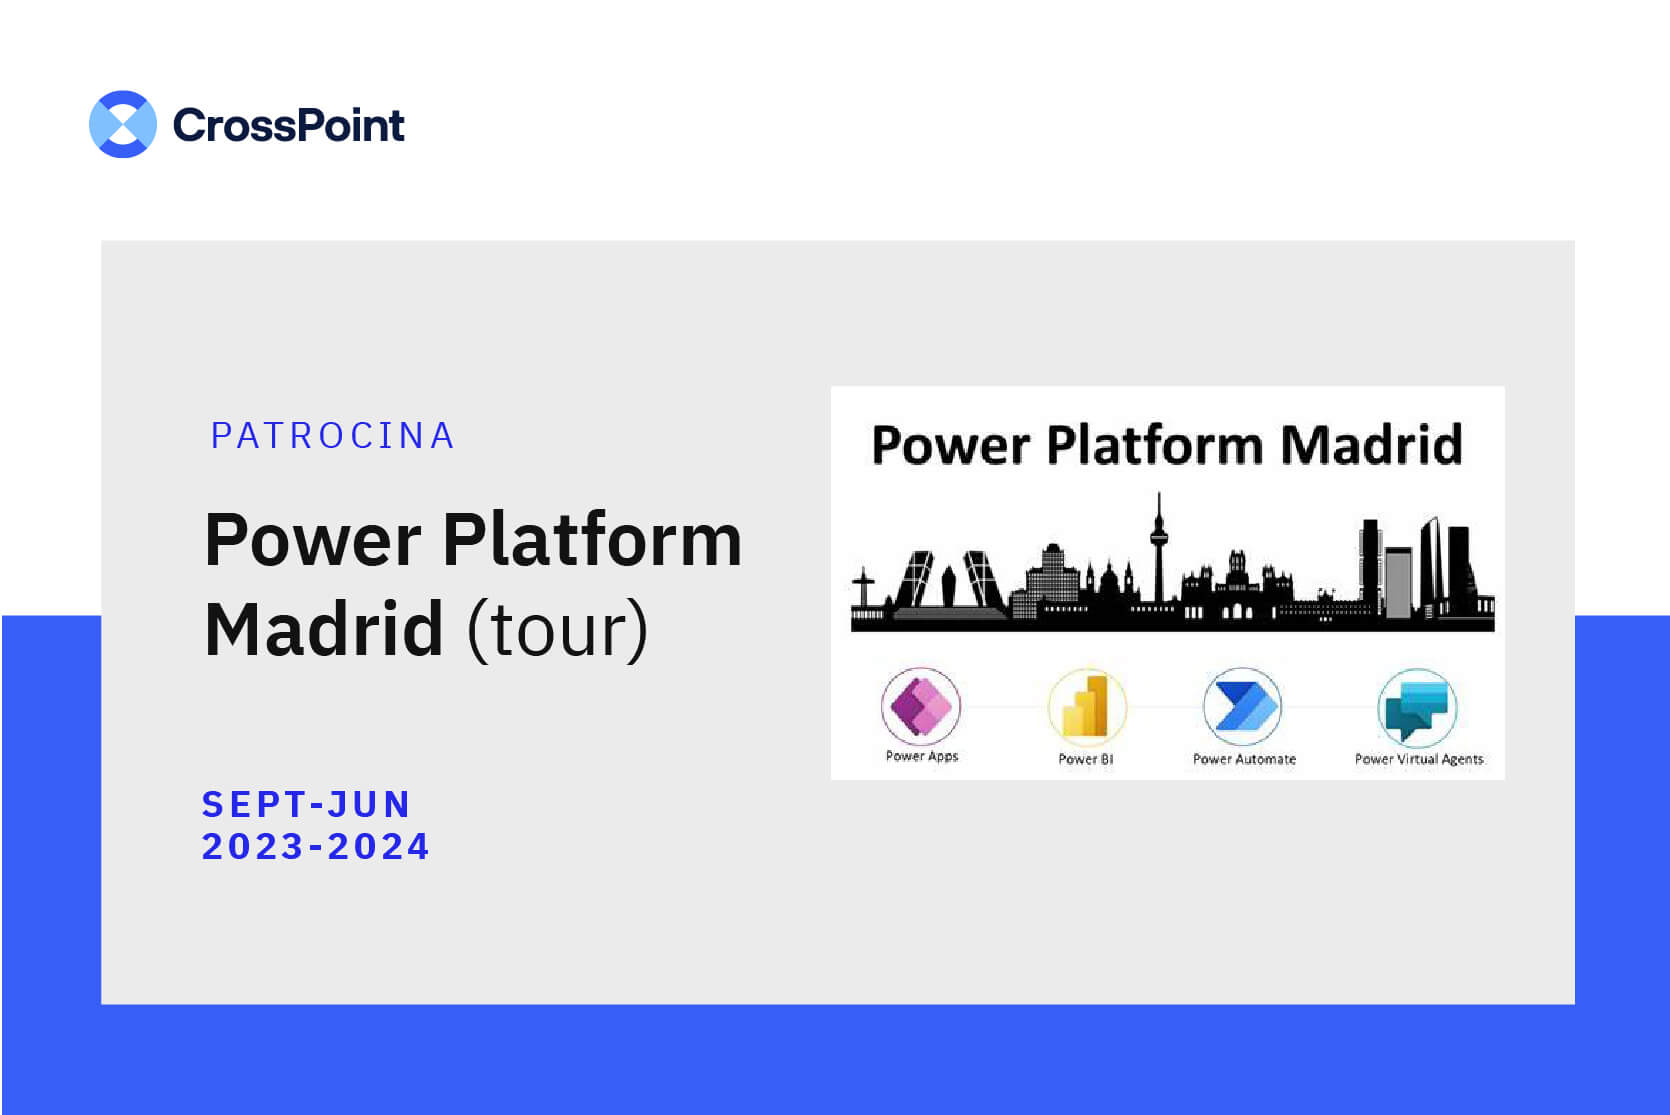 CrossPoint patrocina el Power Platform Madrid tour de septiembde de 2023 a junio de 2024